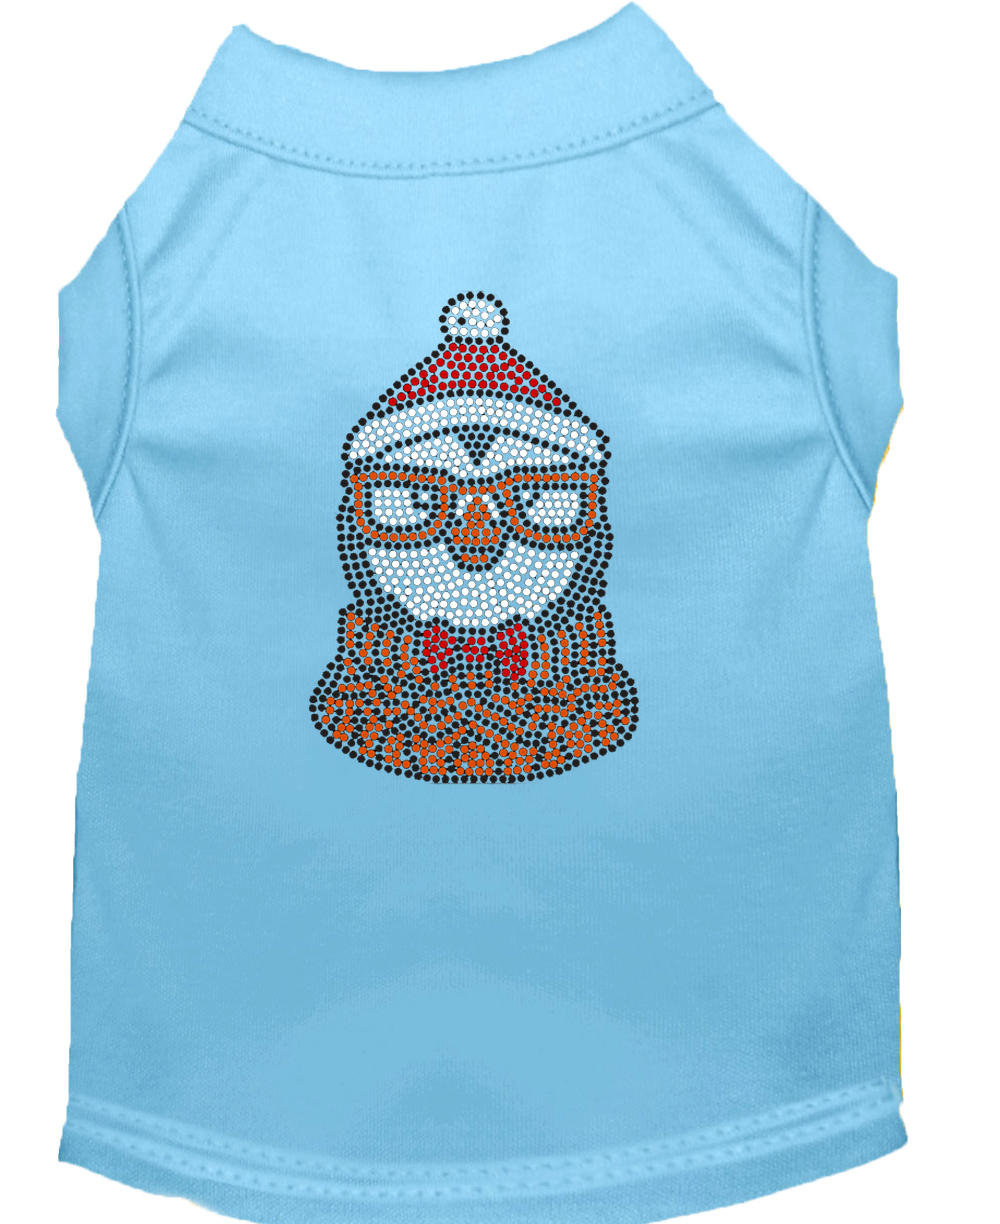 Hipster Penguin Rhinestone Dog Shirt Baby Blue XS